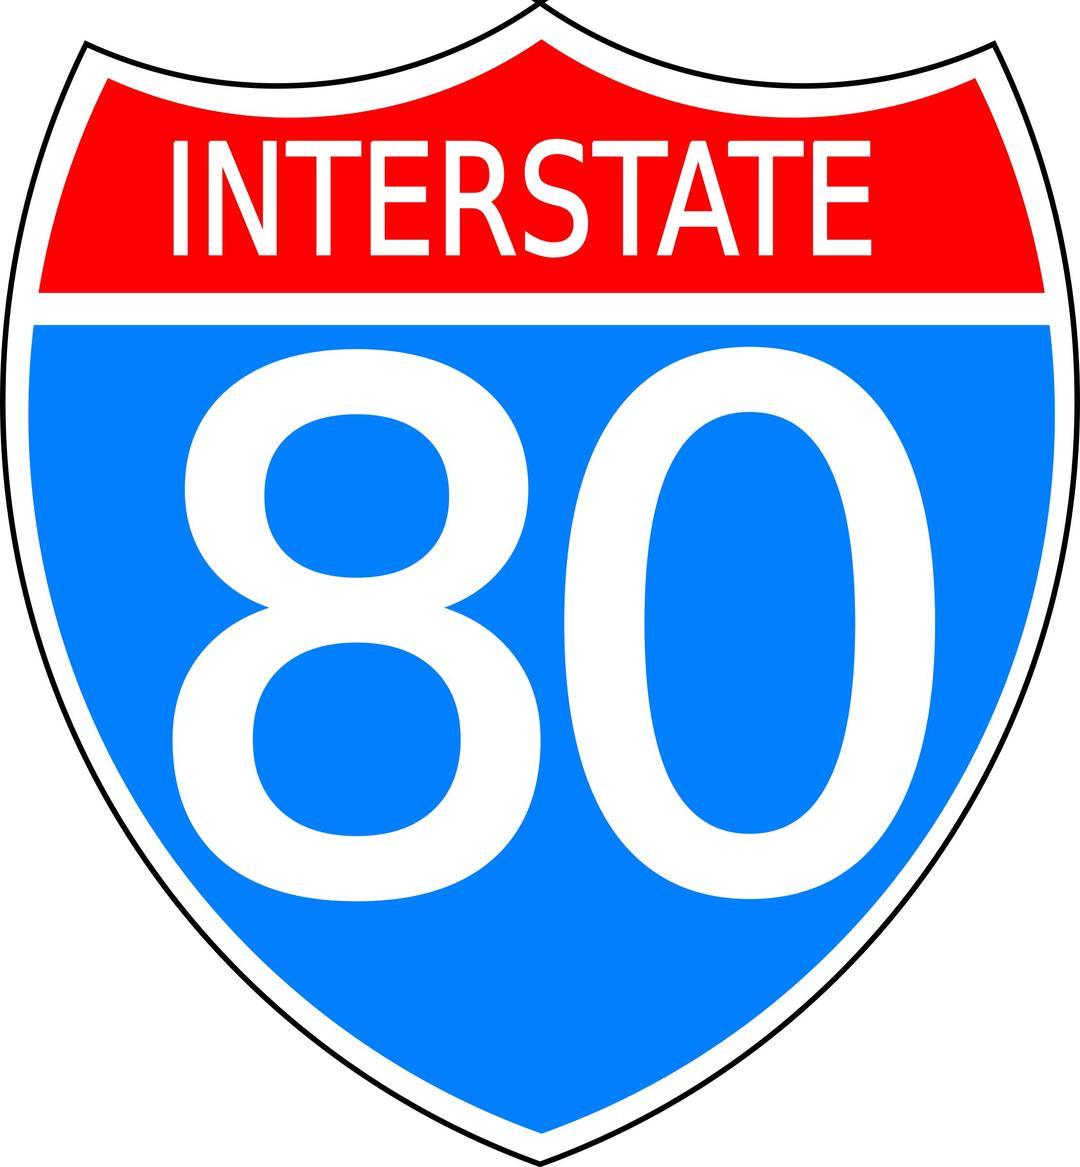 Interstate Highway Sign png transparent